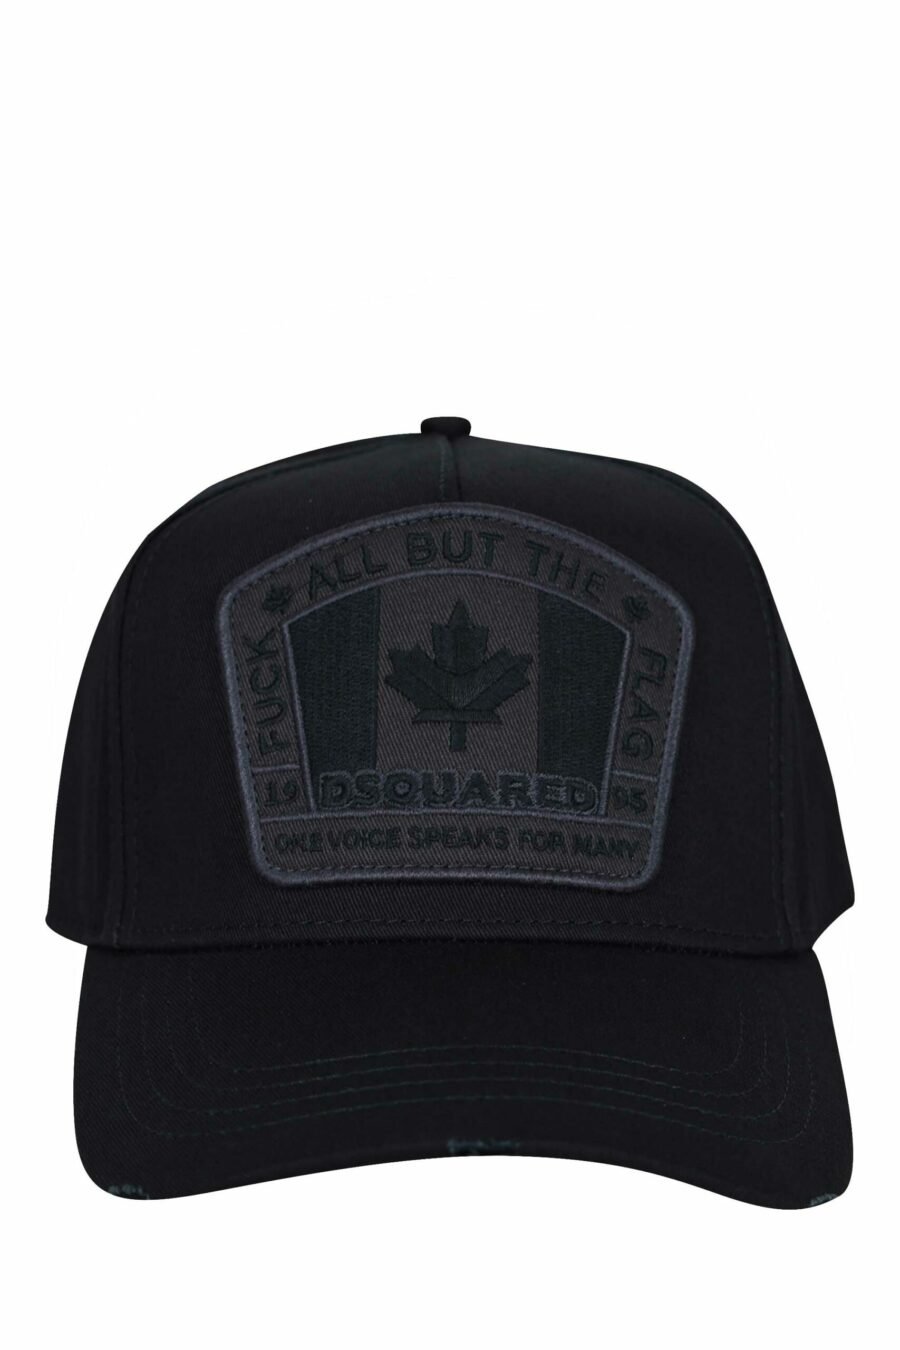 Gorra negra con logo parche Canadá monocromático - 8055777160626 scaled